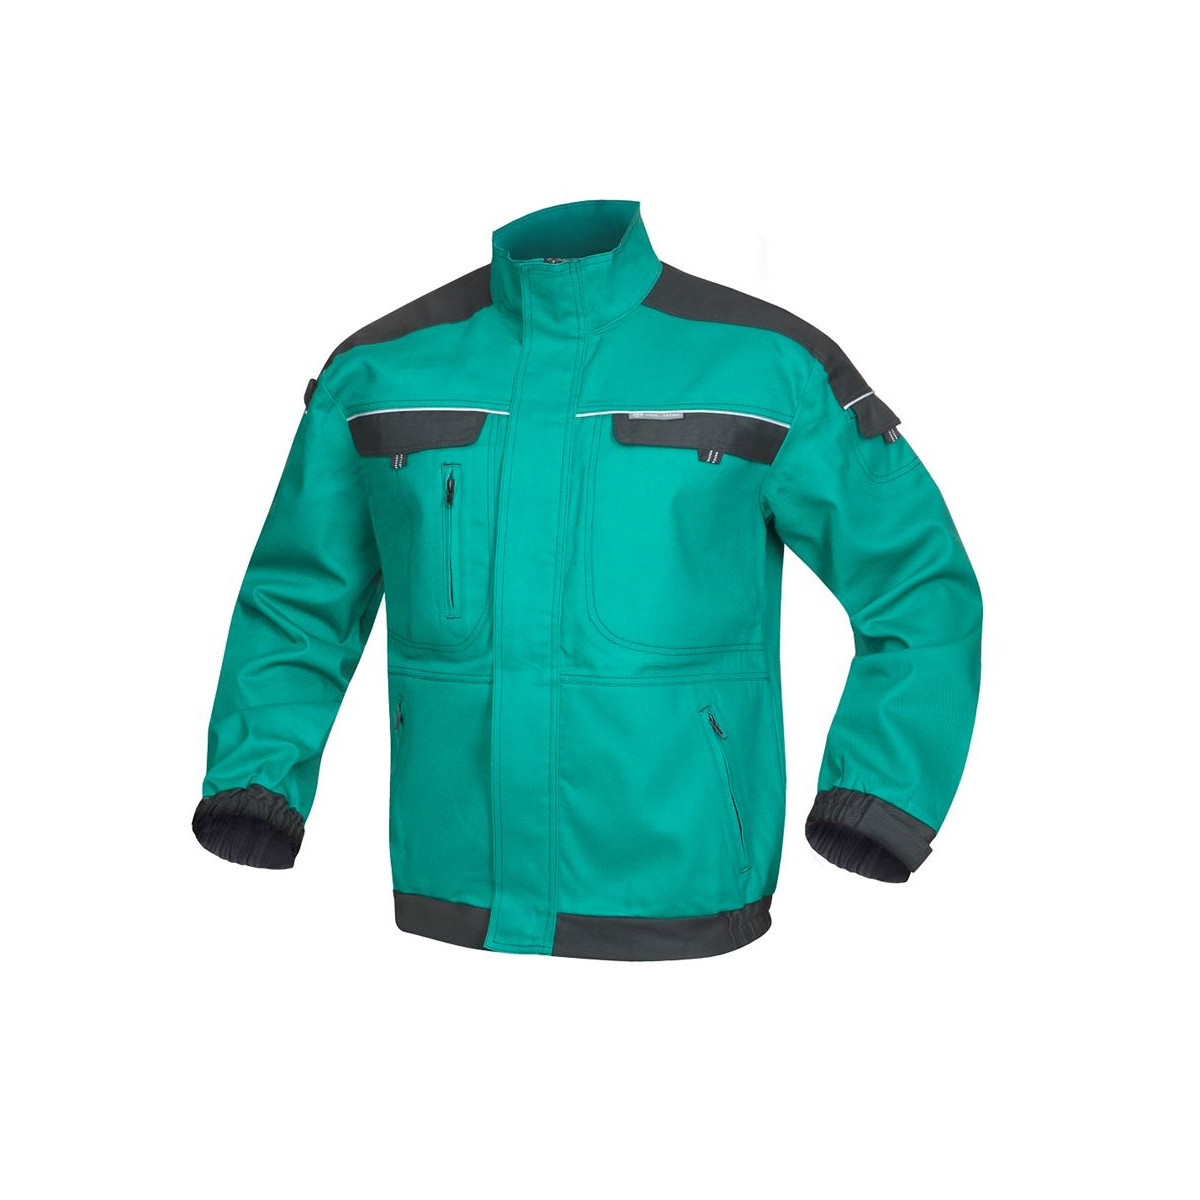 bluzy-robocze-bhp-hurtownia-internetowa - Bluza robocza bhp zielona monterska odblaskowa cool trend H8103 Ardon Safety